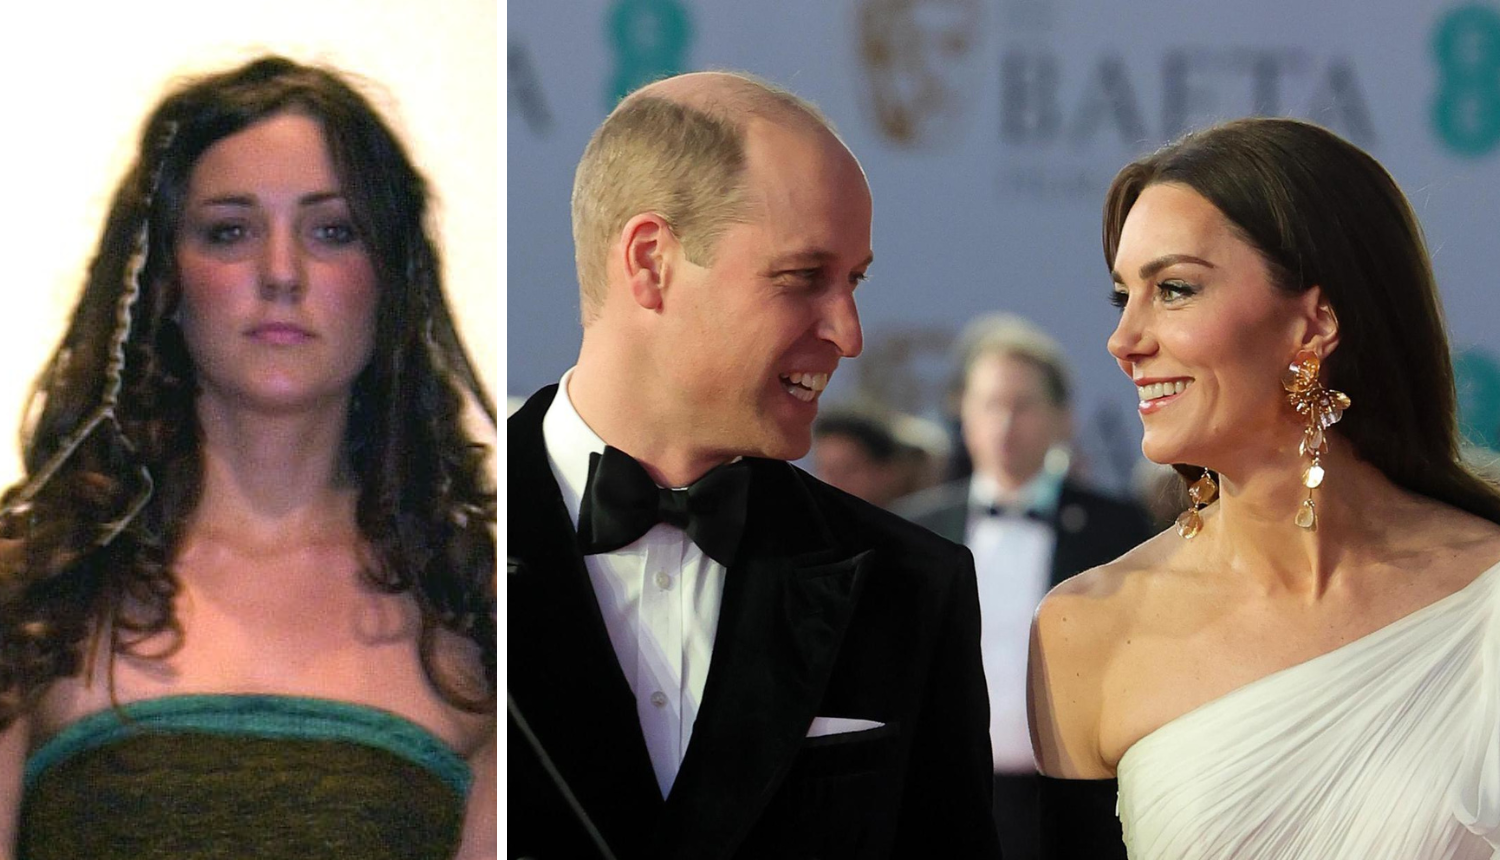 Ljubavni počeci Williama i Kate: Nosila je prozirnu haljinu na reviji, a on joj donira 200 funti